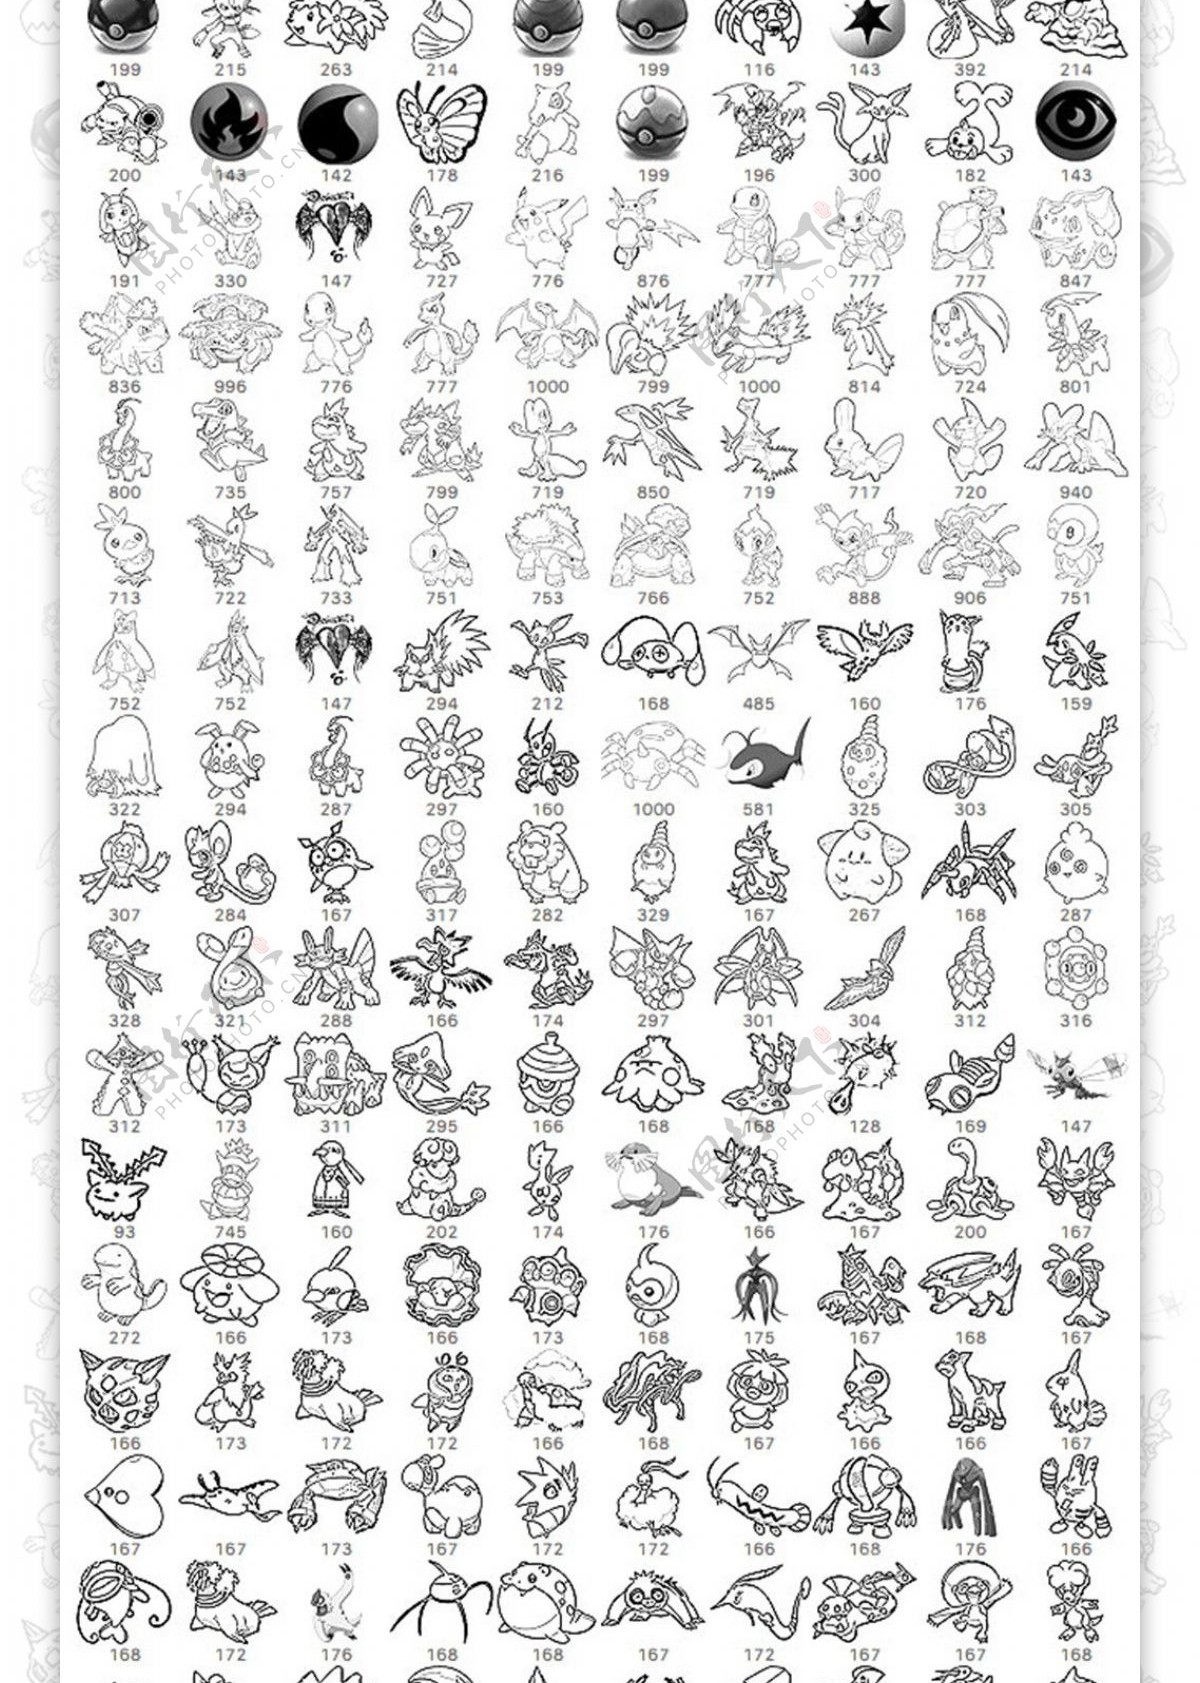 宠物小精灵PokemenGO线框图形PS笔刷素材